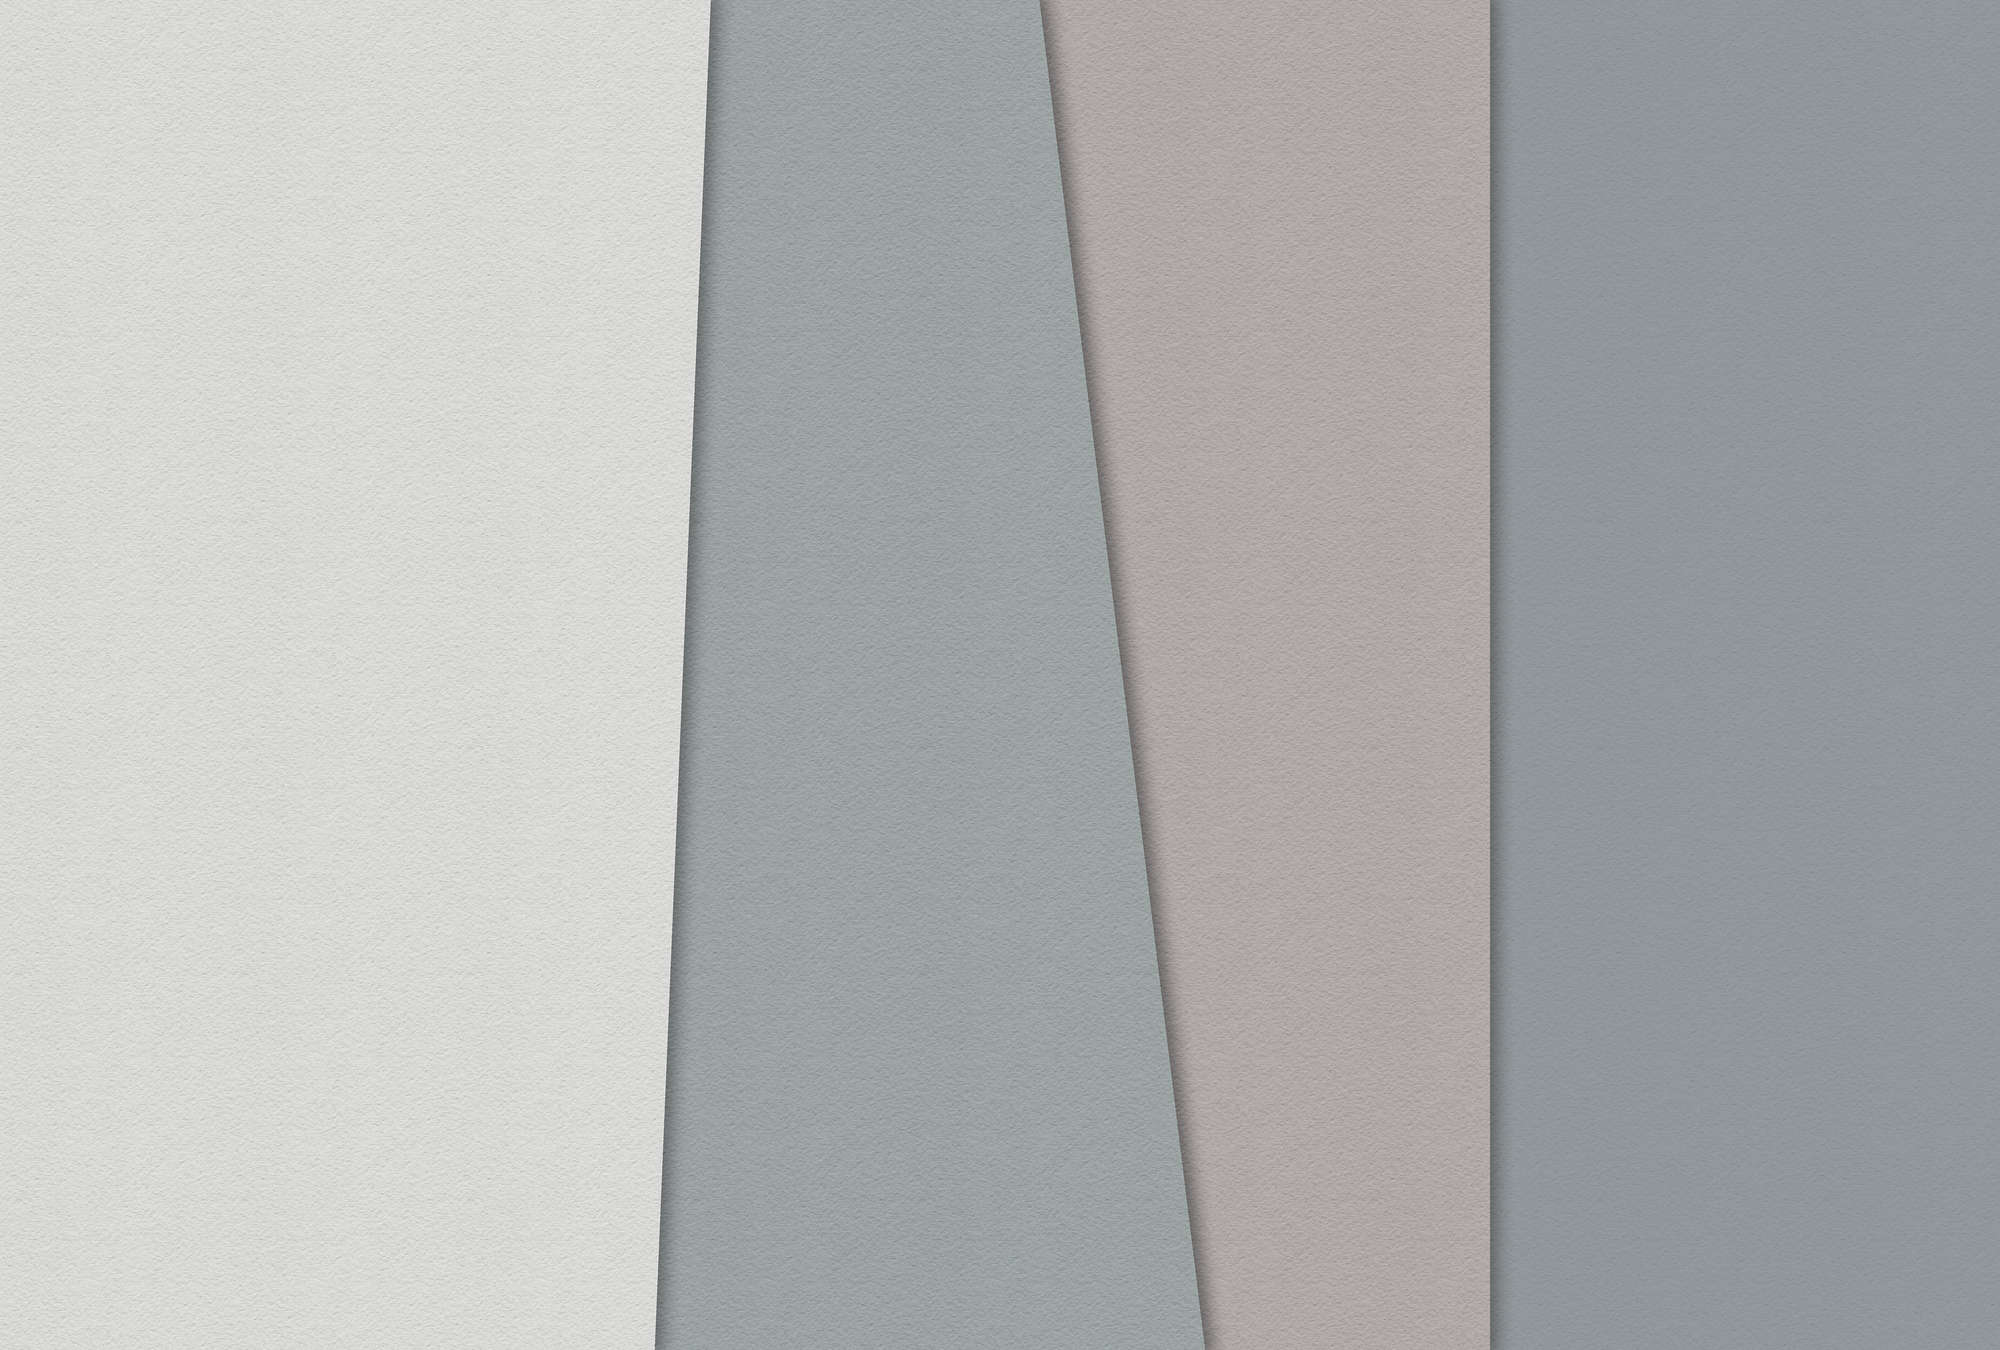             Papel estratificado 1 - Papel pintado gráfico con zonas de color en estructura de papel hecho a mano - Azul, Crema | Estructura no tejida
        